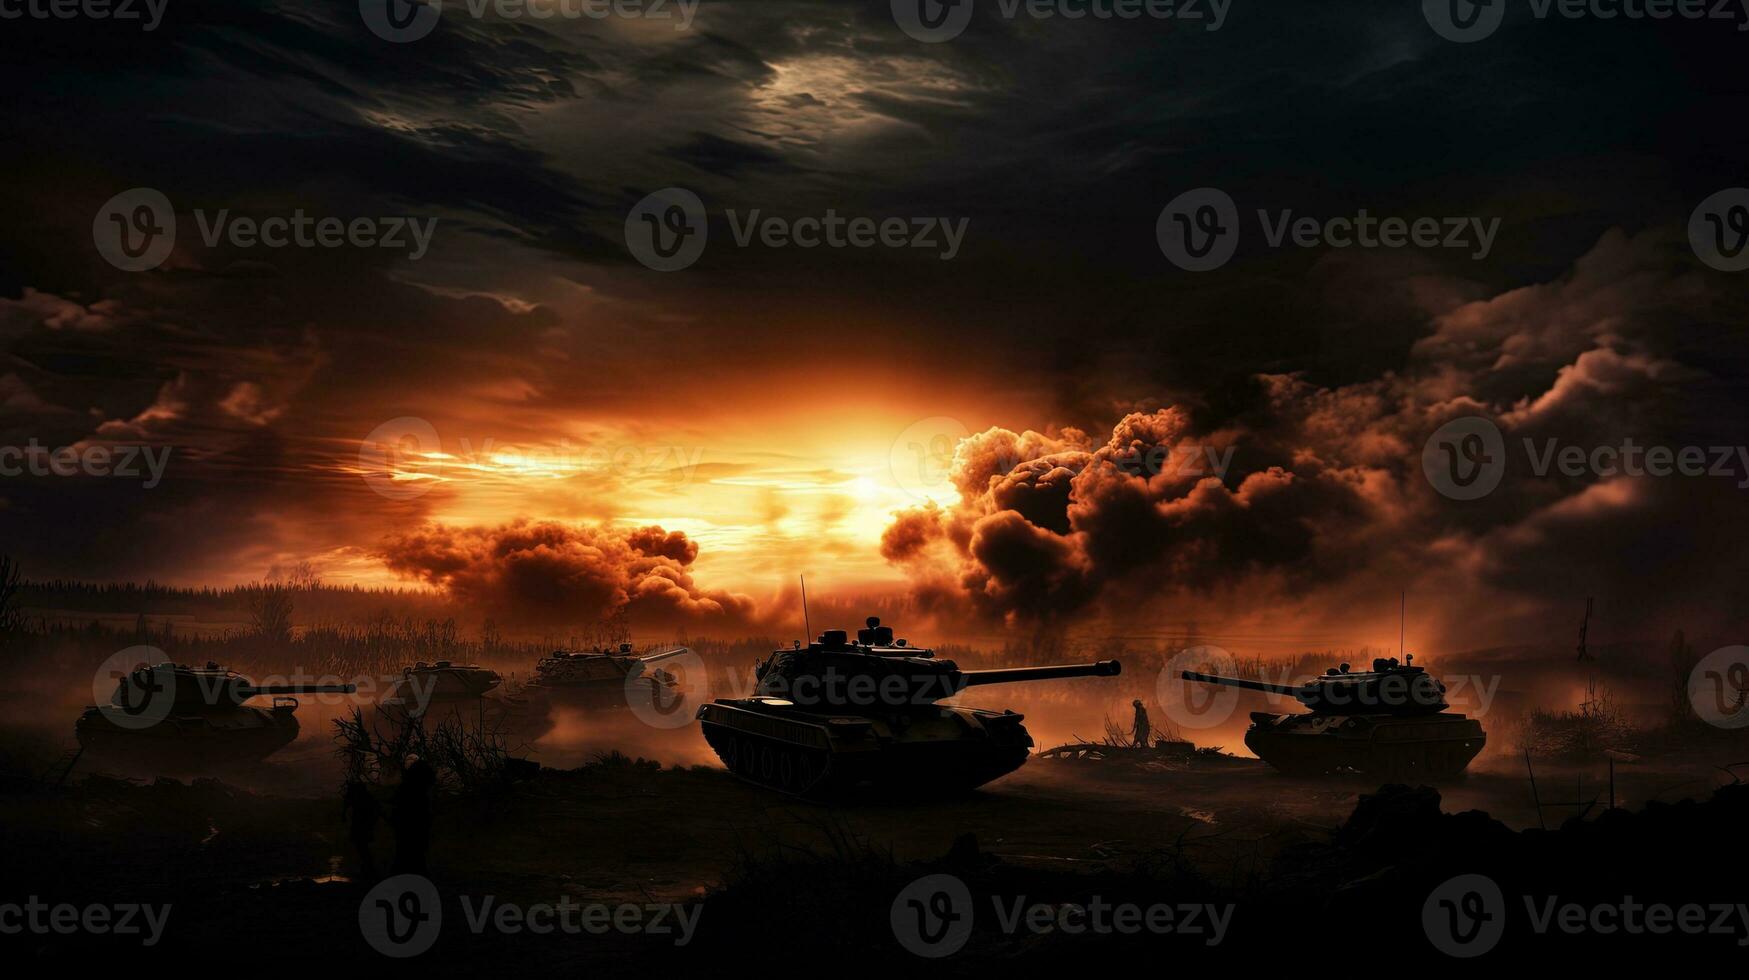 slåss scen på natt med tysk tankar och armerad fordon stridande under en molnig himmel silhuett med krig dimma foto